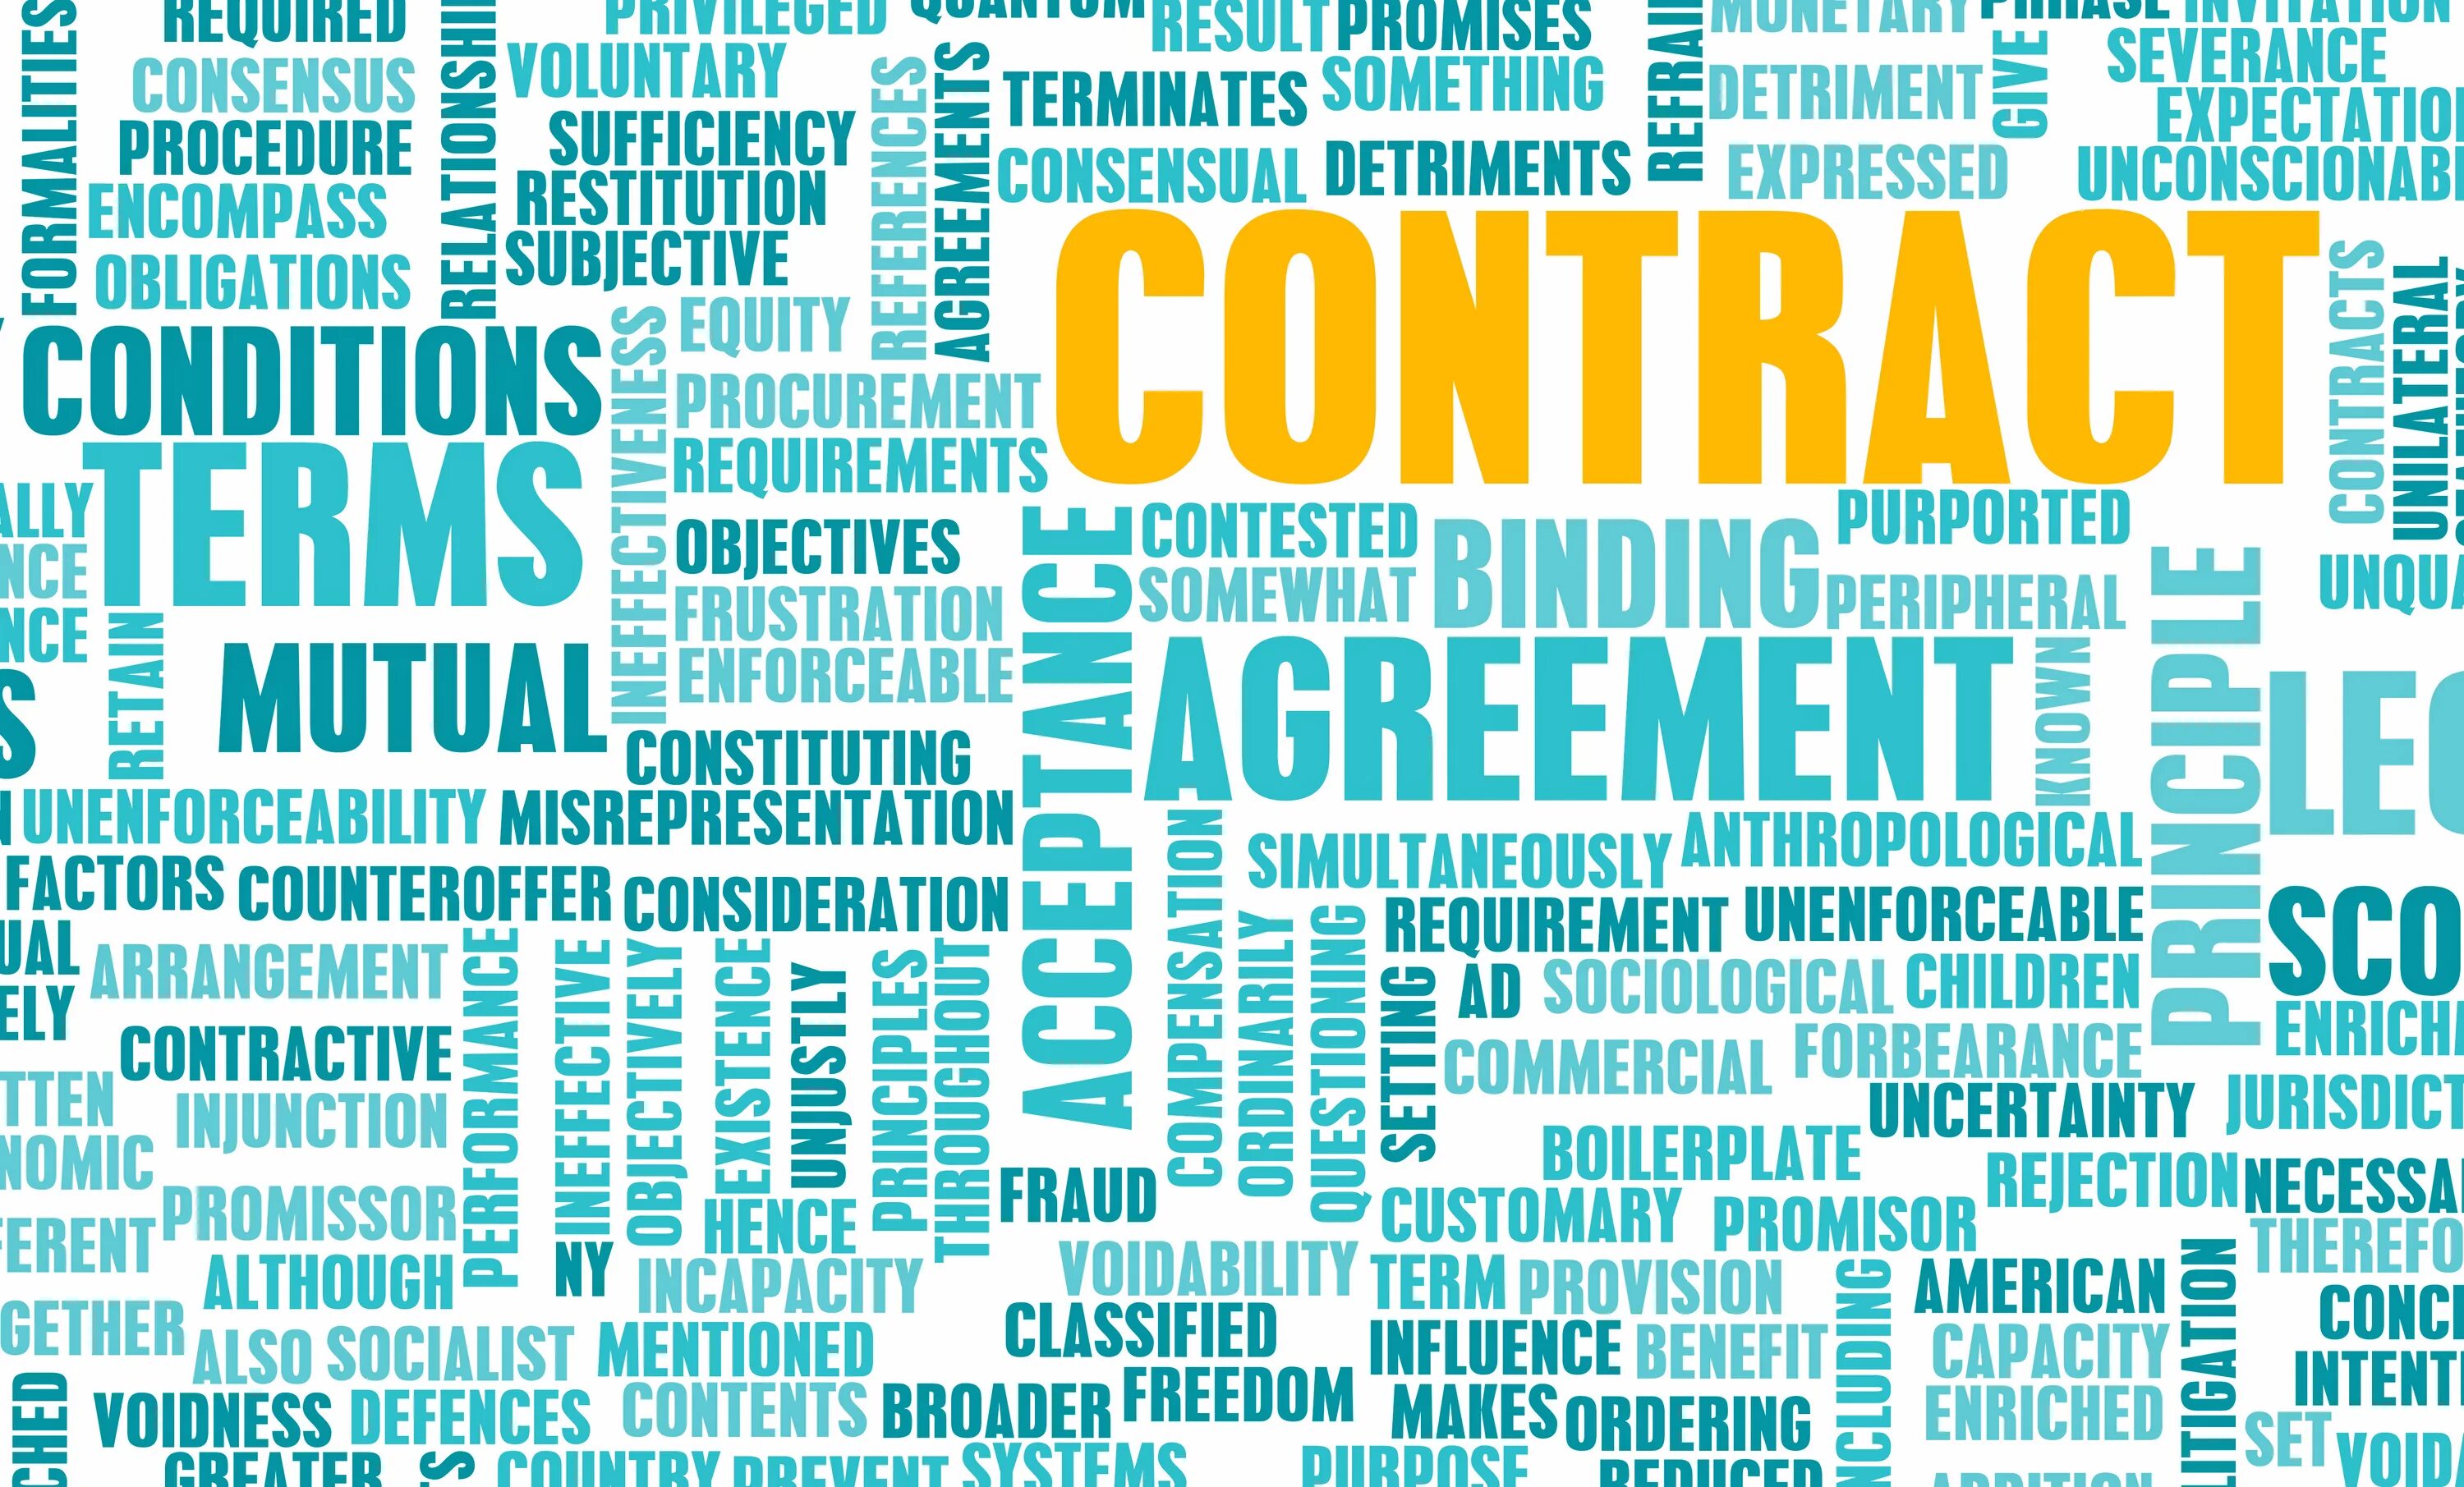 Content broad. Договор абстрактно. Categories of misrepresentation Contract.